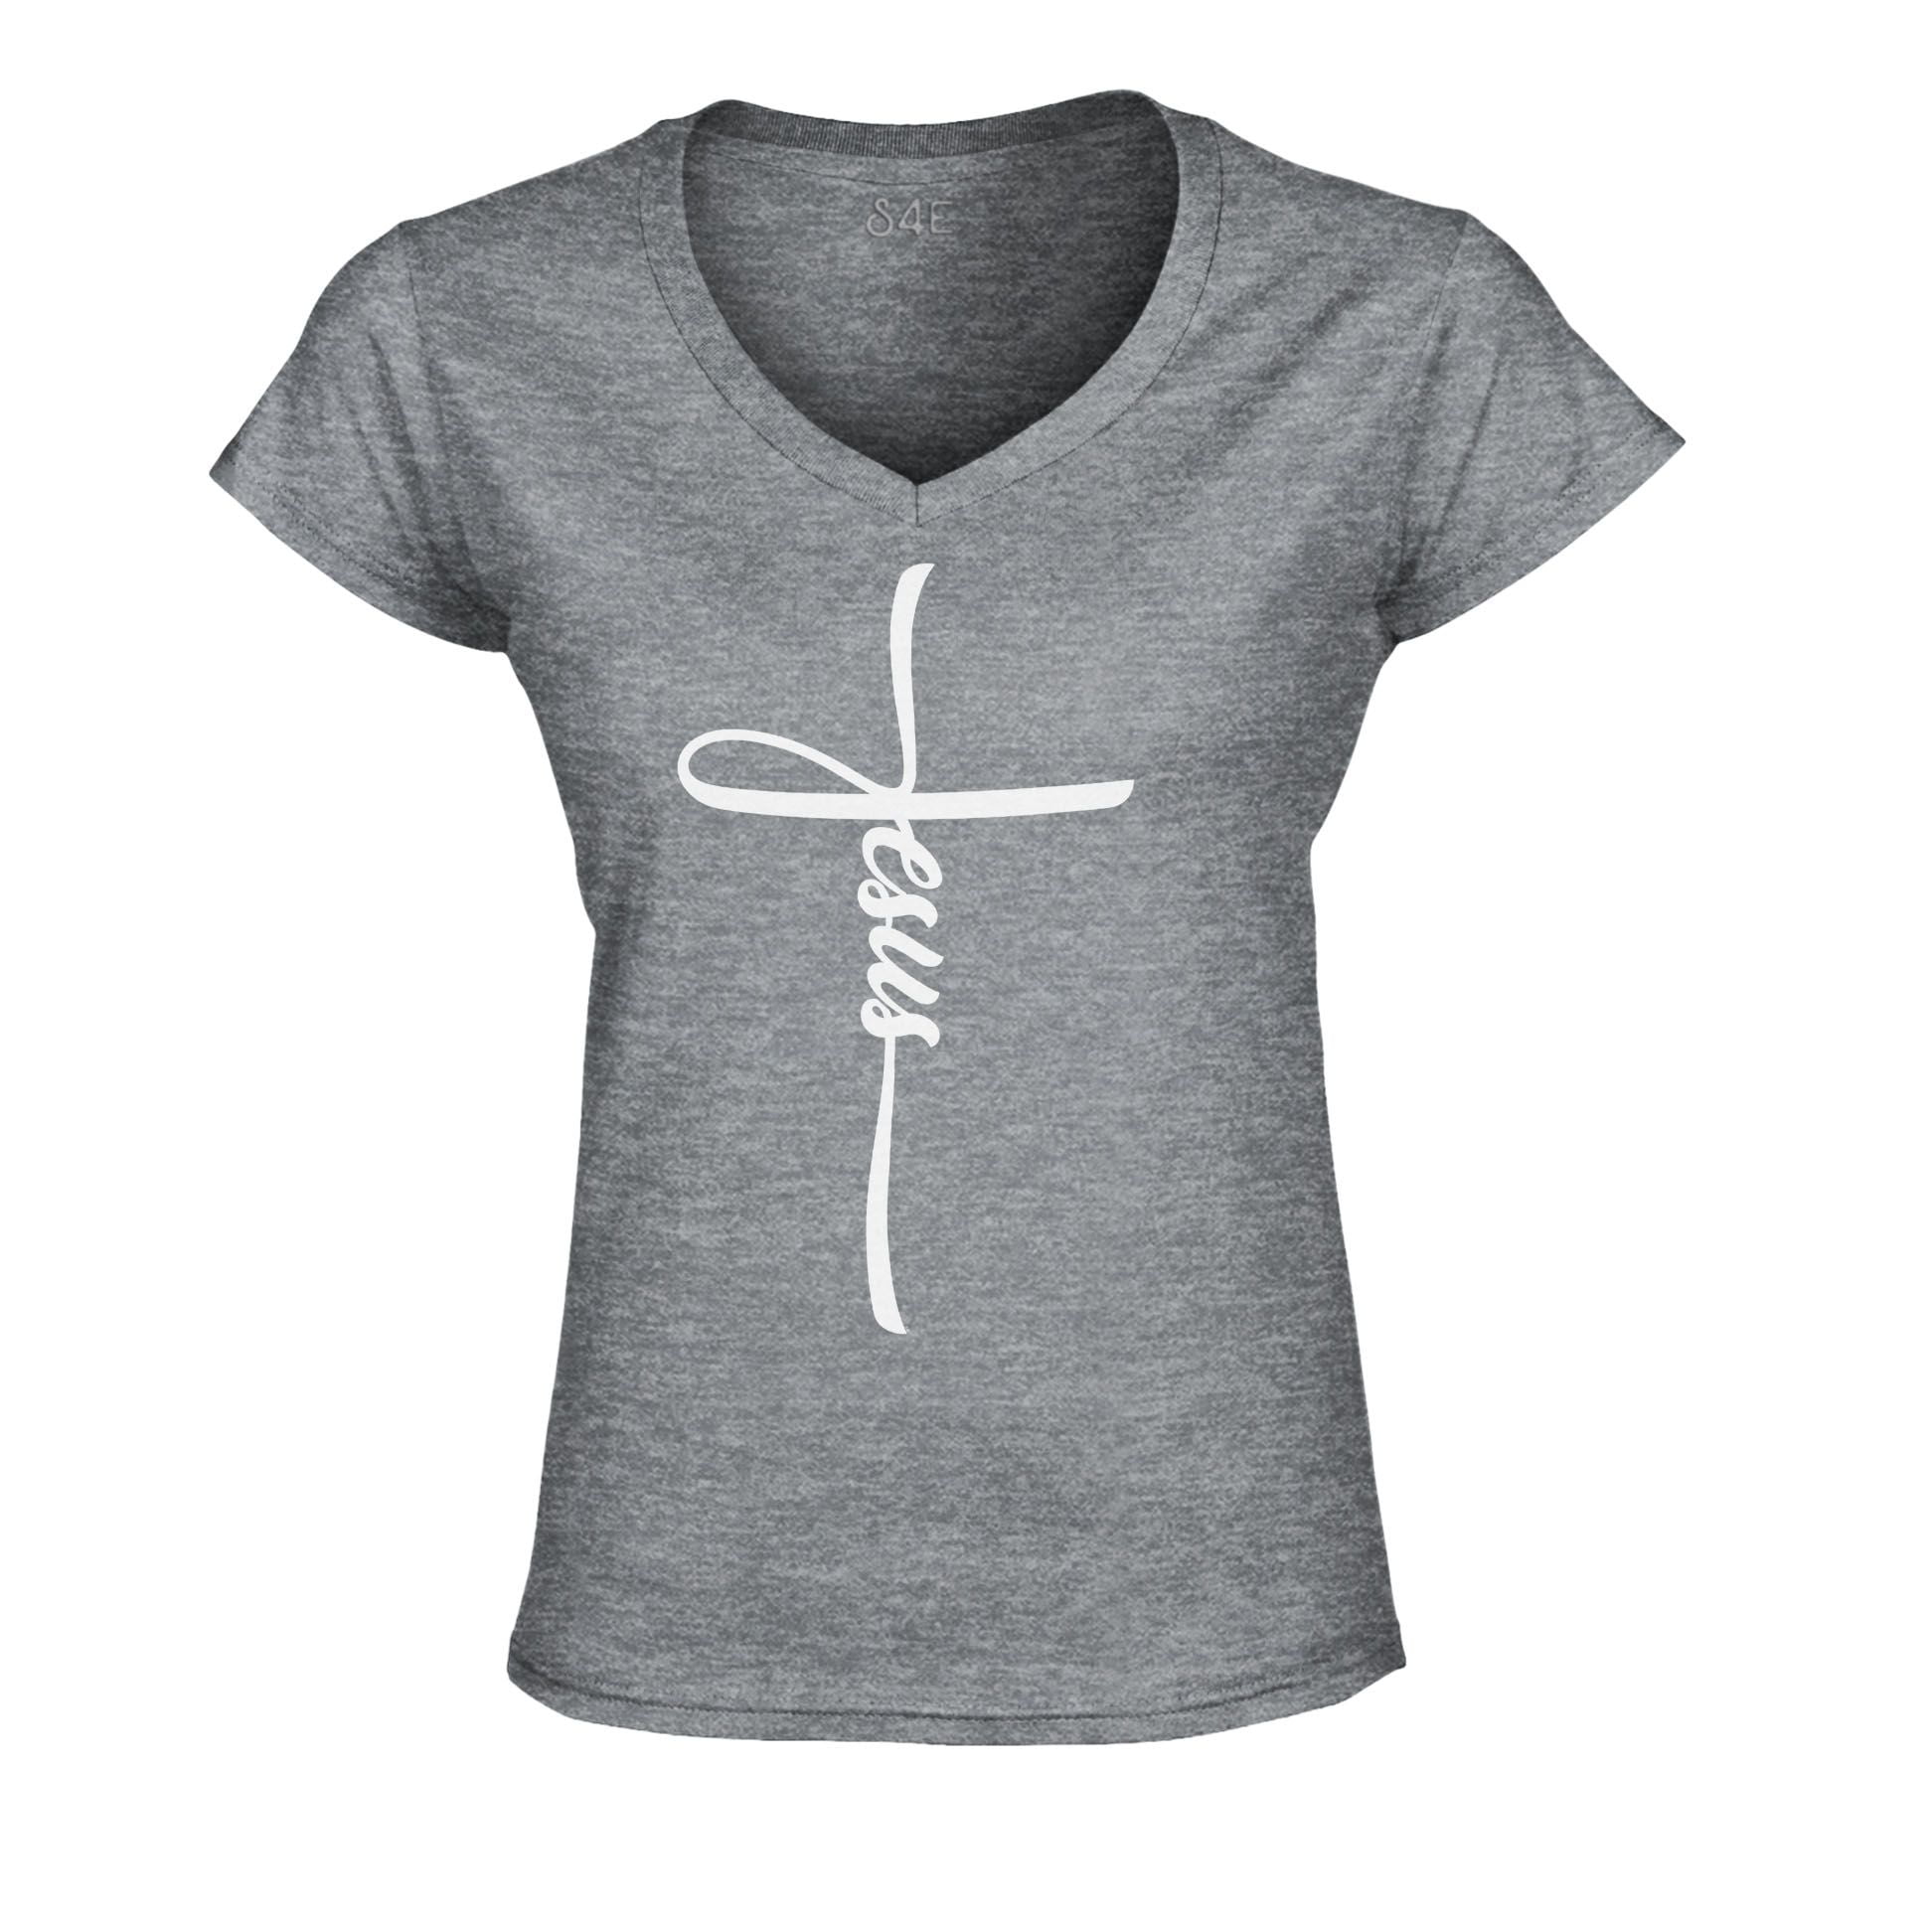 S4E Women's Jesus Cross Religious Slim Fit V-Neck T-Shirt XX-Large ...